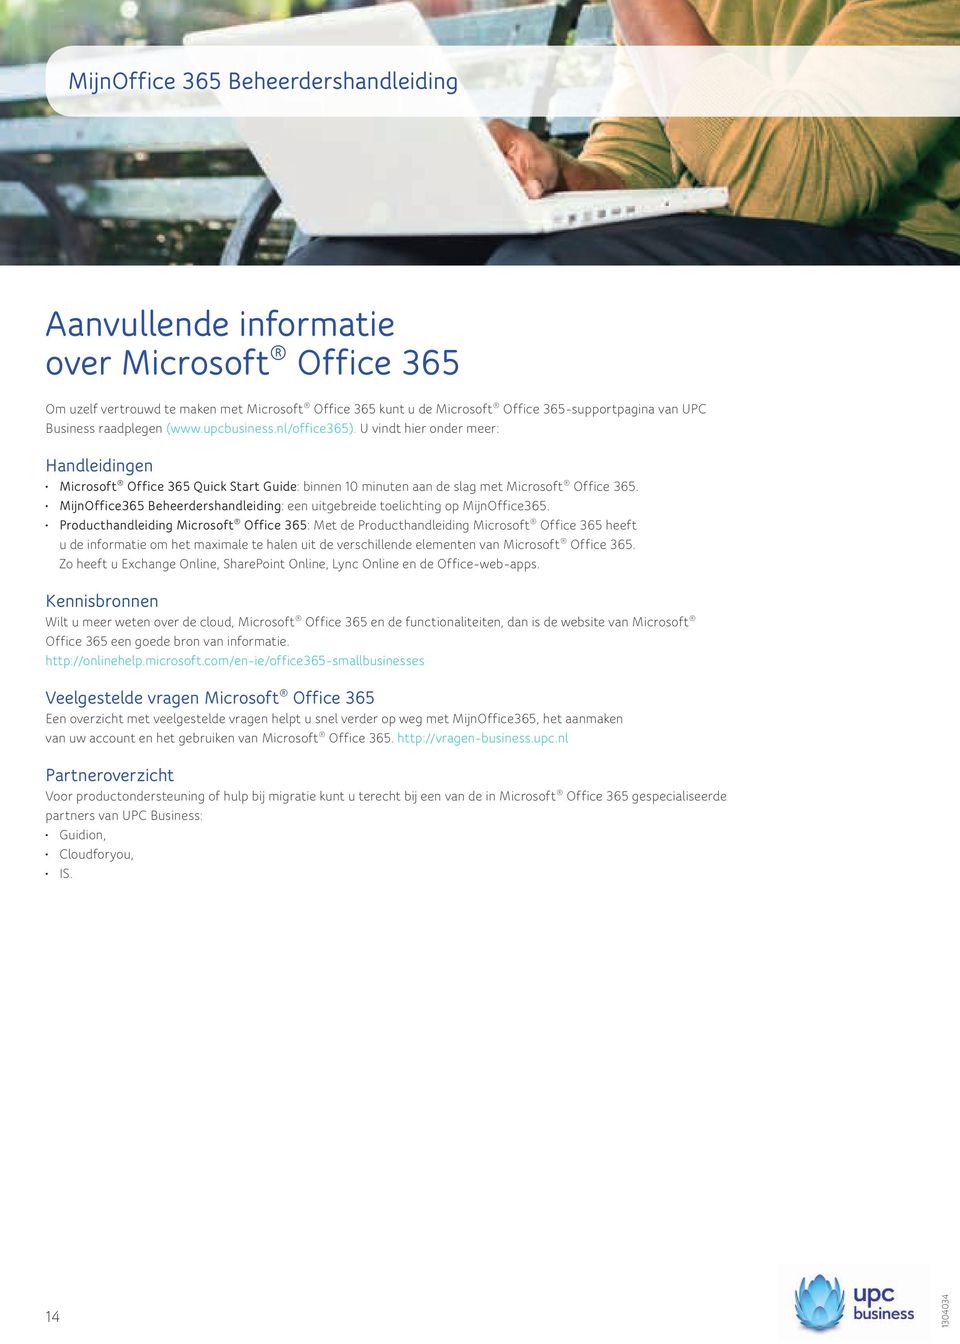 MijnOffice365 Beheerdershandleiding: een uitgebreide toelichting op MijnOffice365.